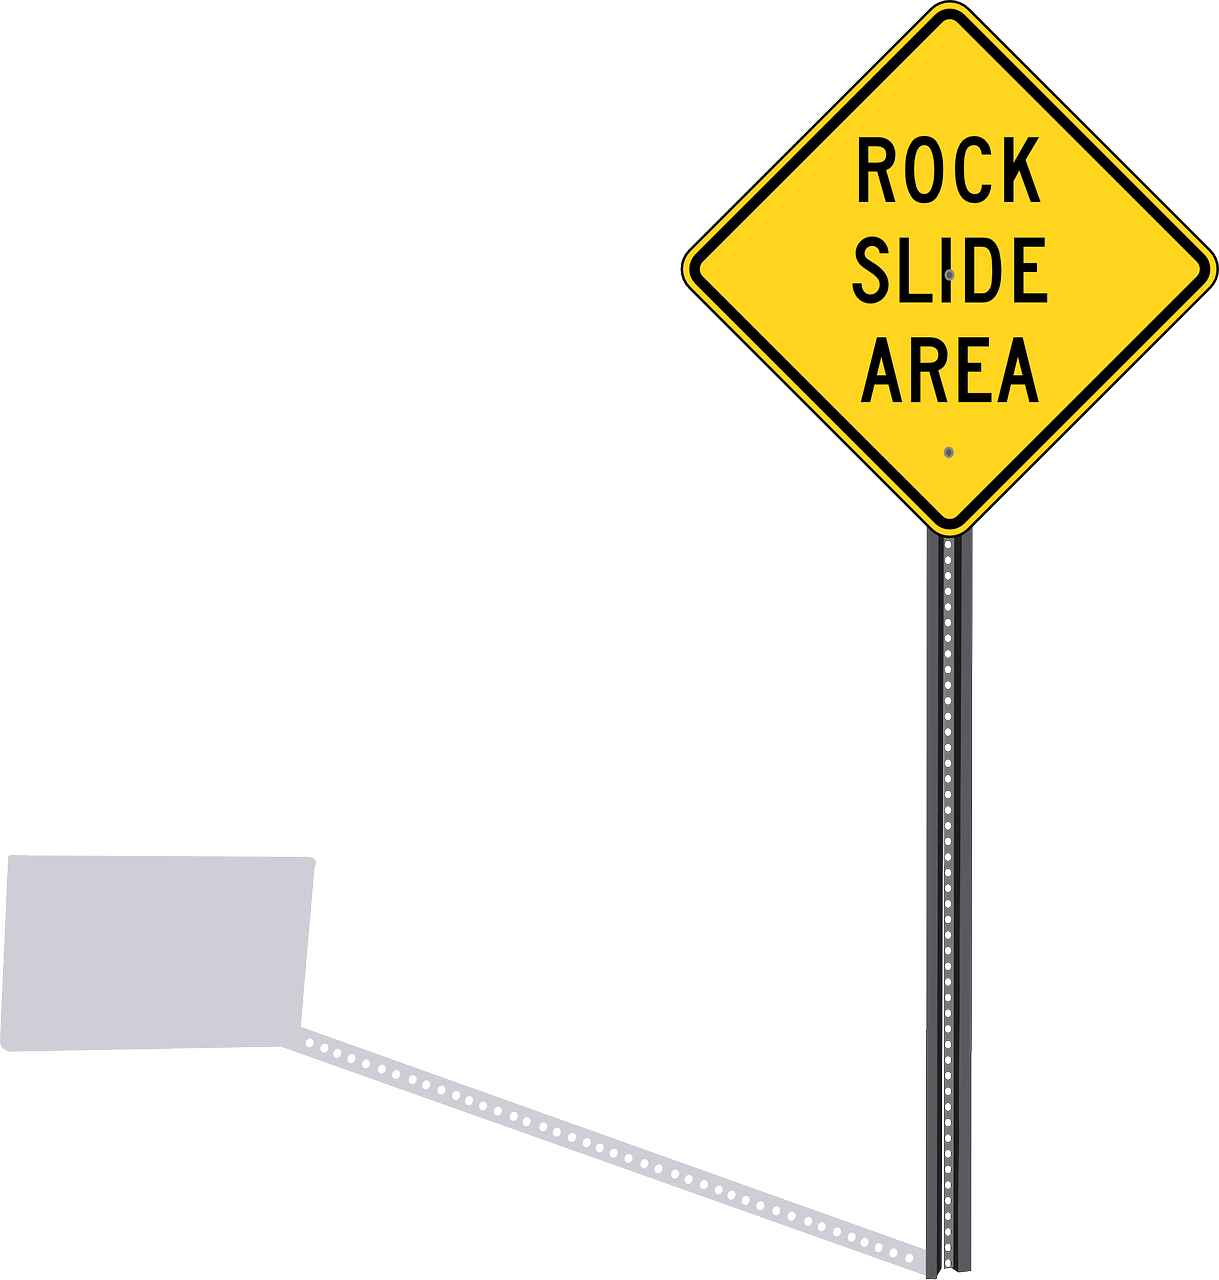 Rock Slide Area Sign PNG image